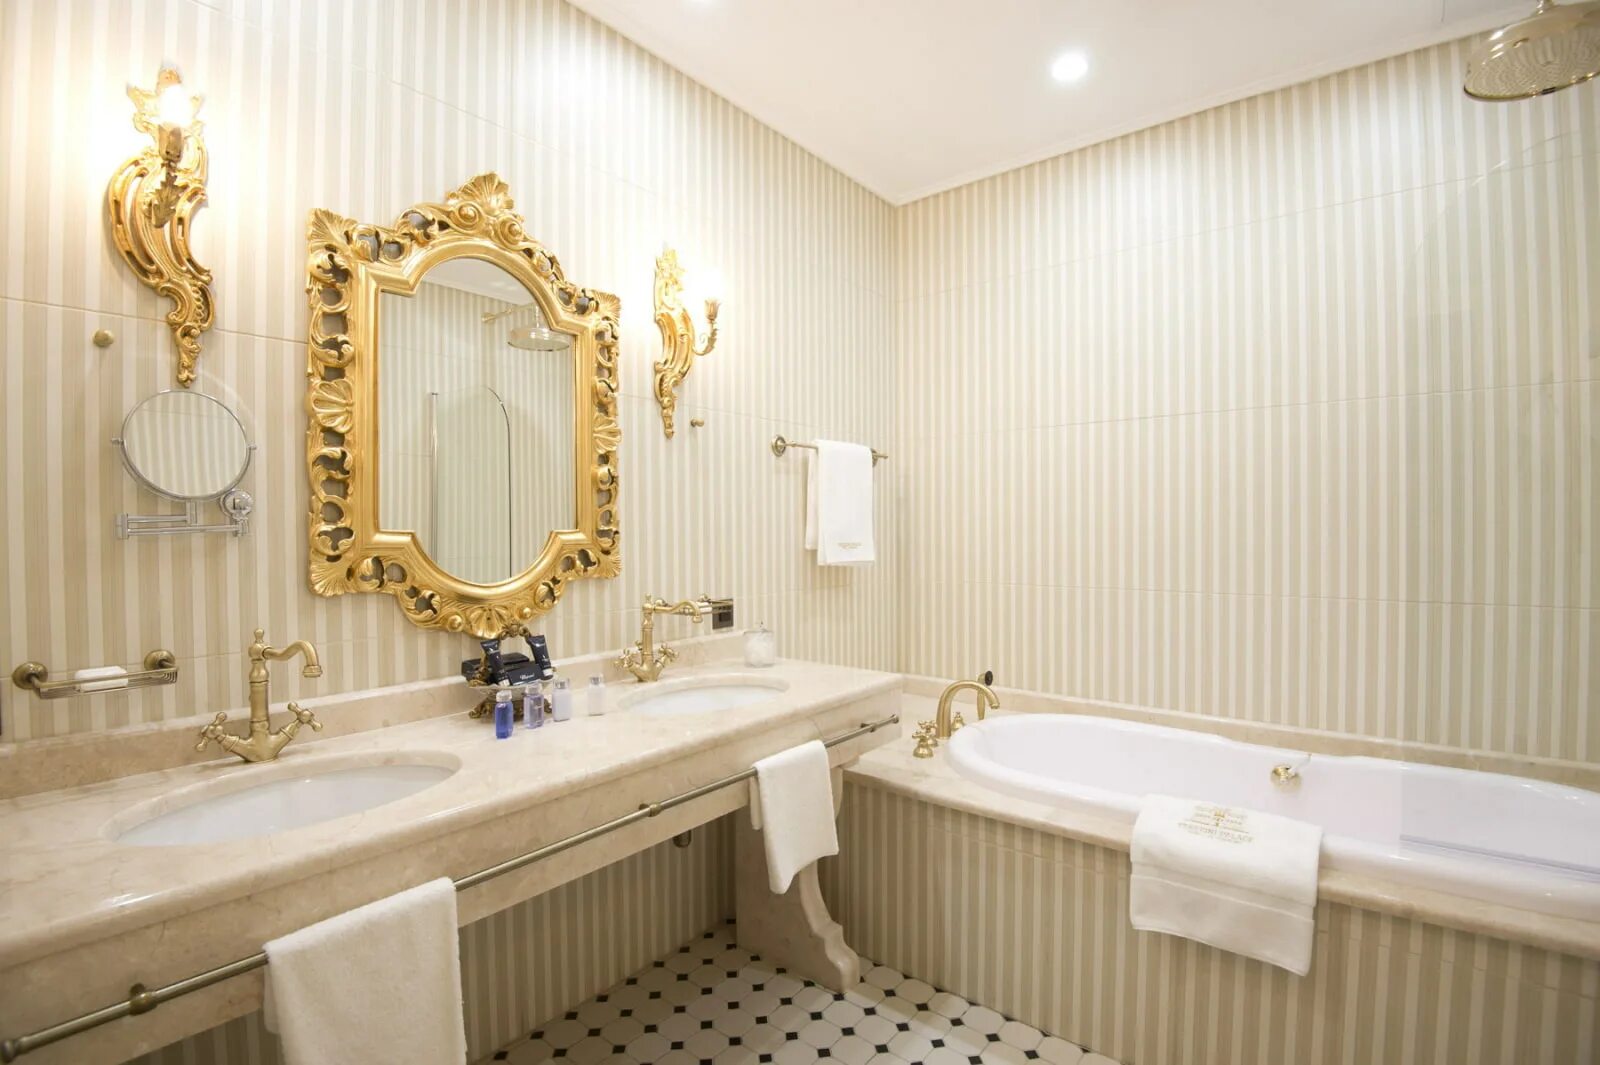 Ванная спб. Ванная в отеле в классическом стиле. Ванная в стиле Возрождения. Ванная в стиле Ренессанс. Гостиница санузел в классическом стиле.